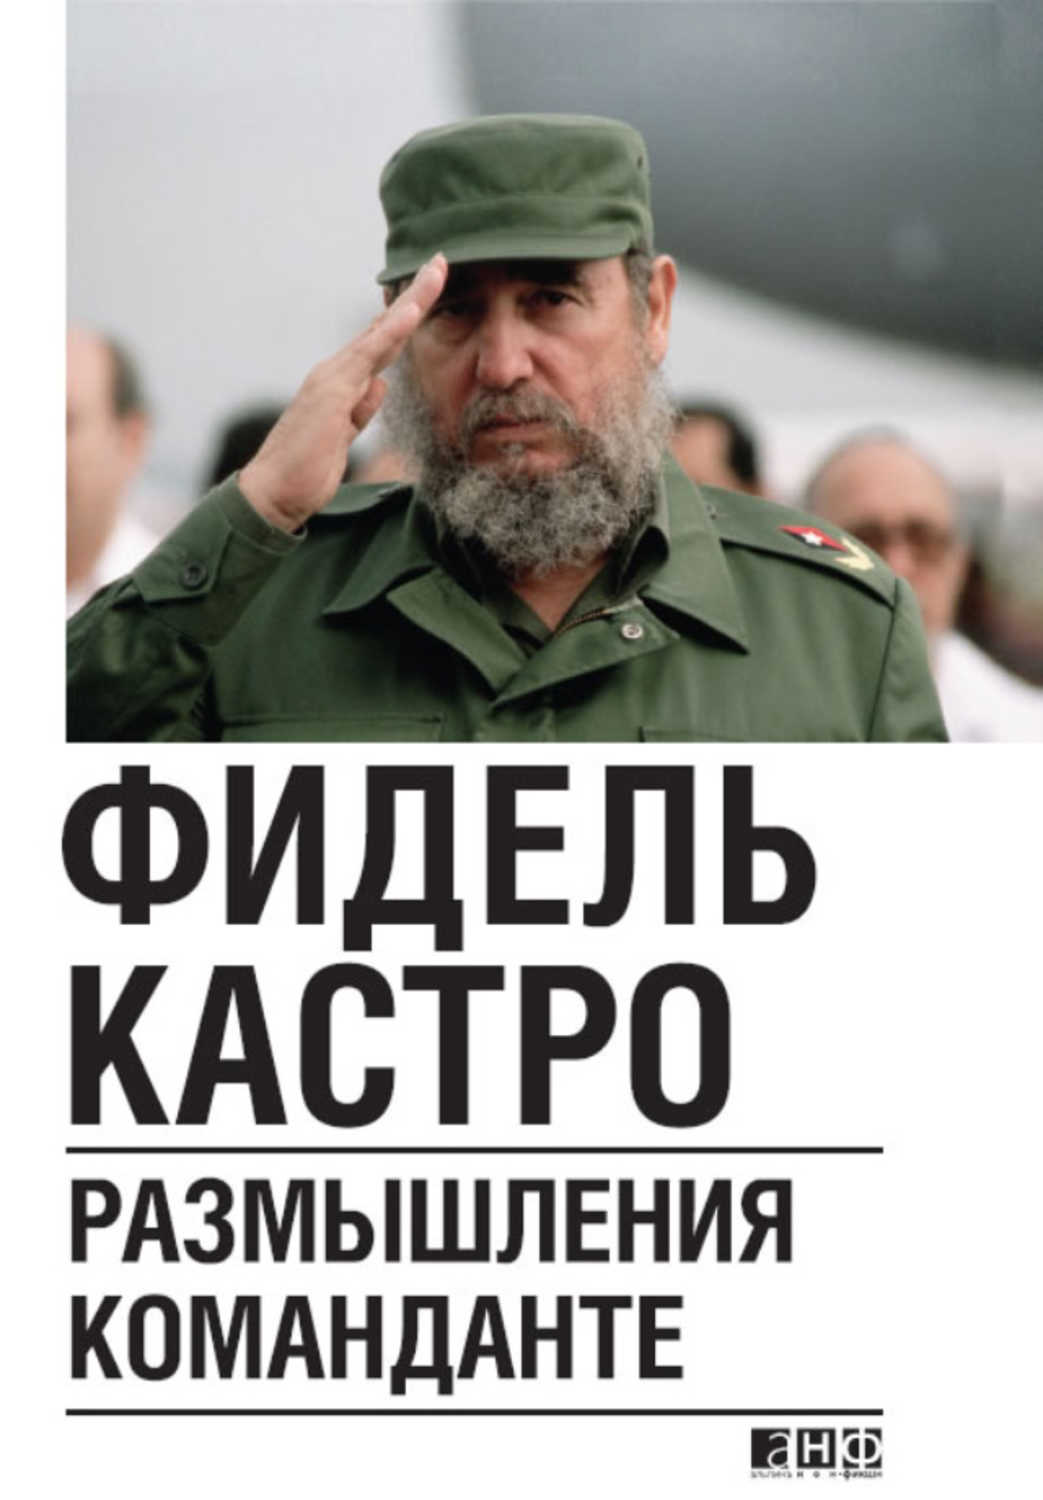 Кастро Фидель - «Размышления команданте»